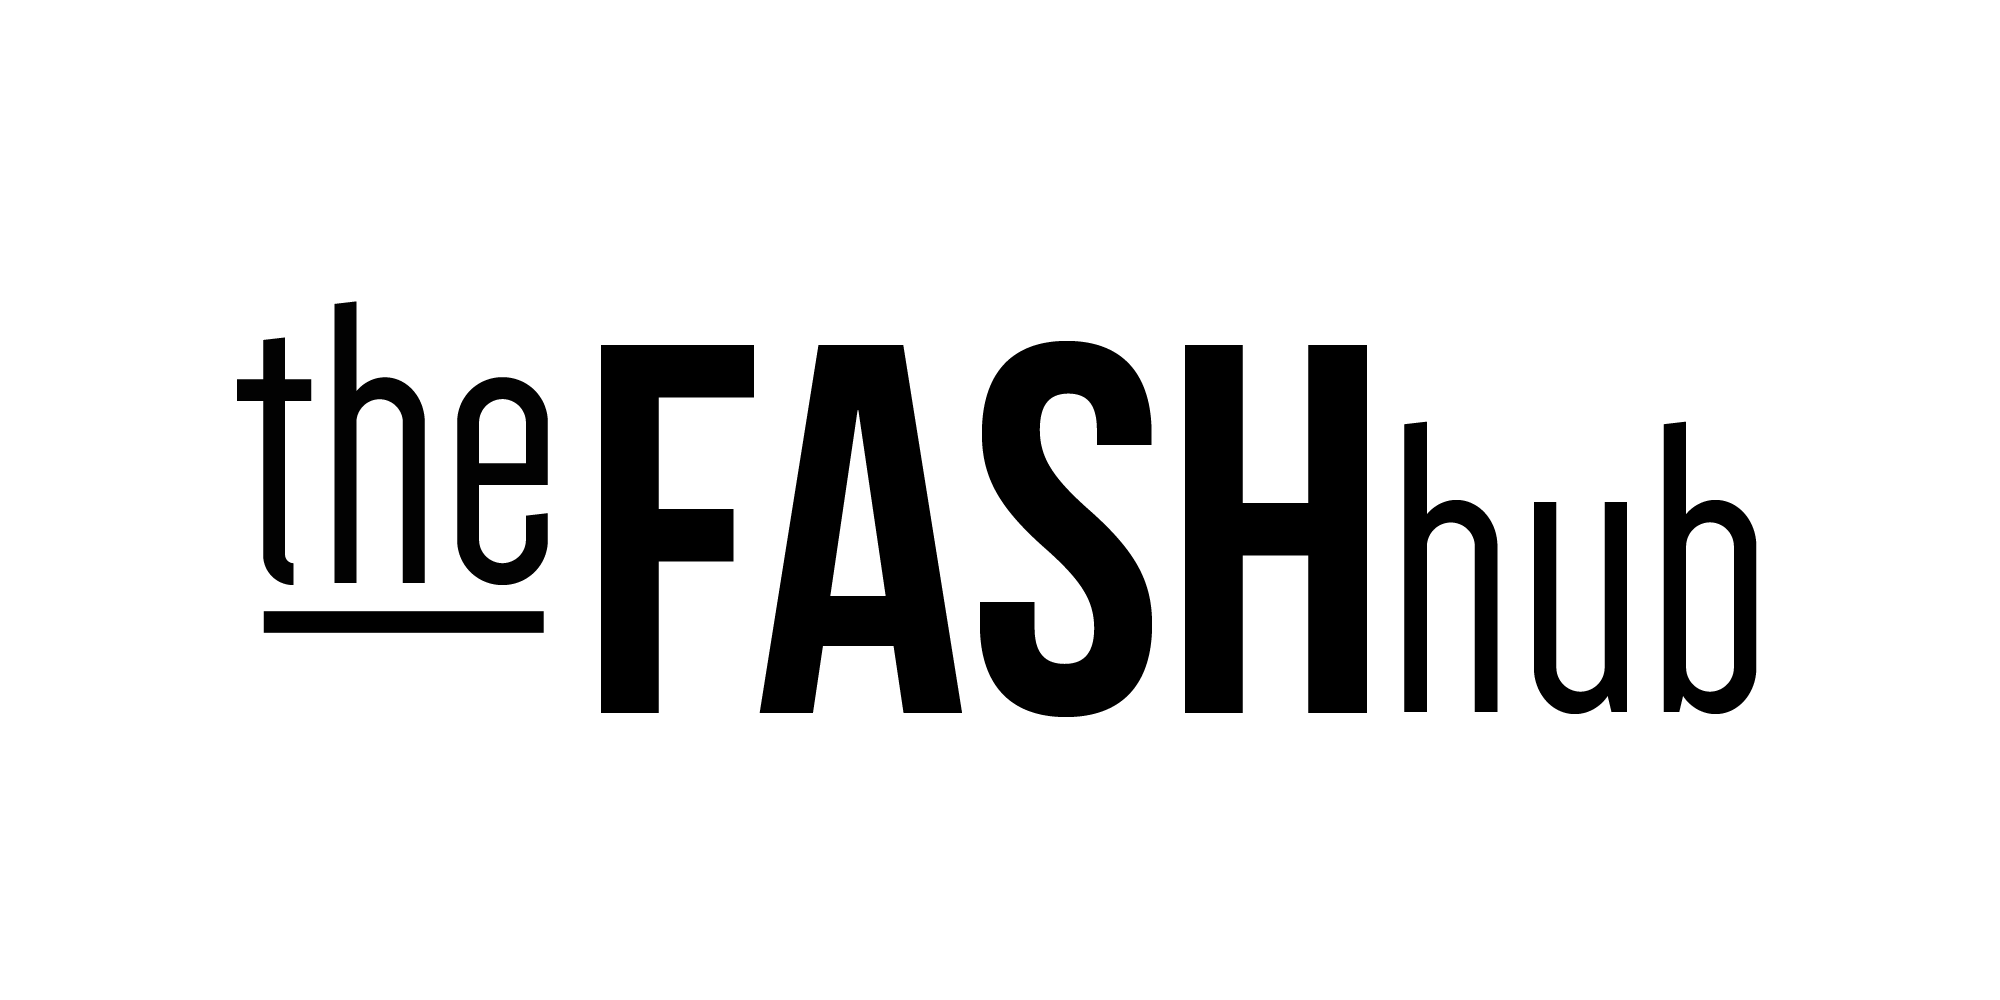 The FASH hub